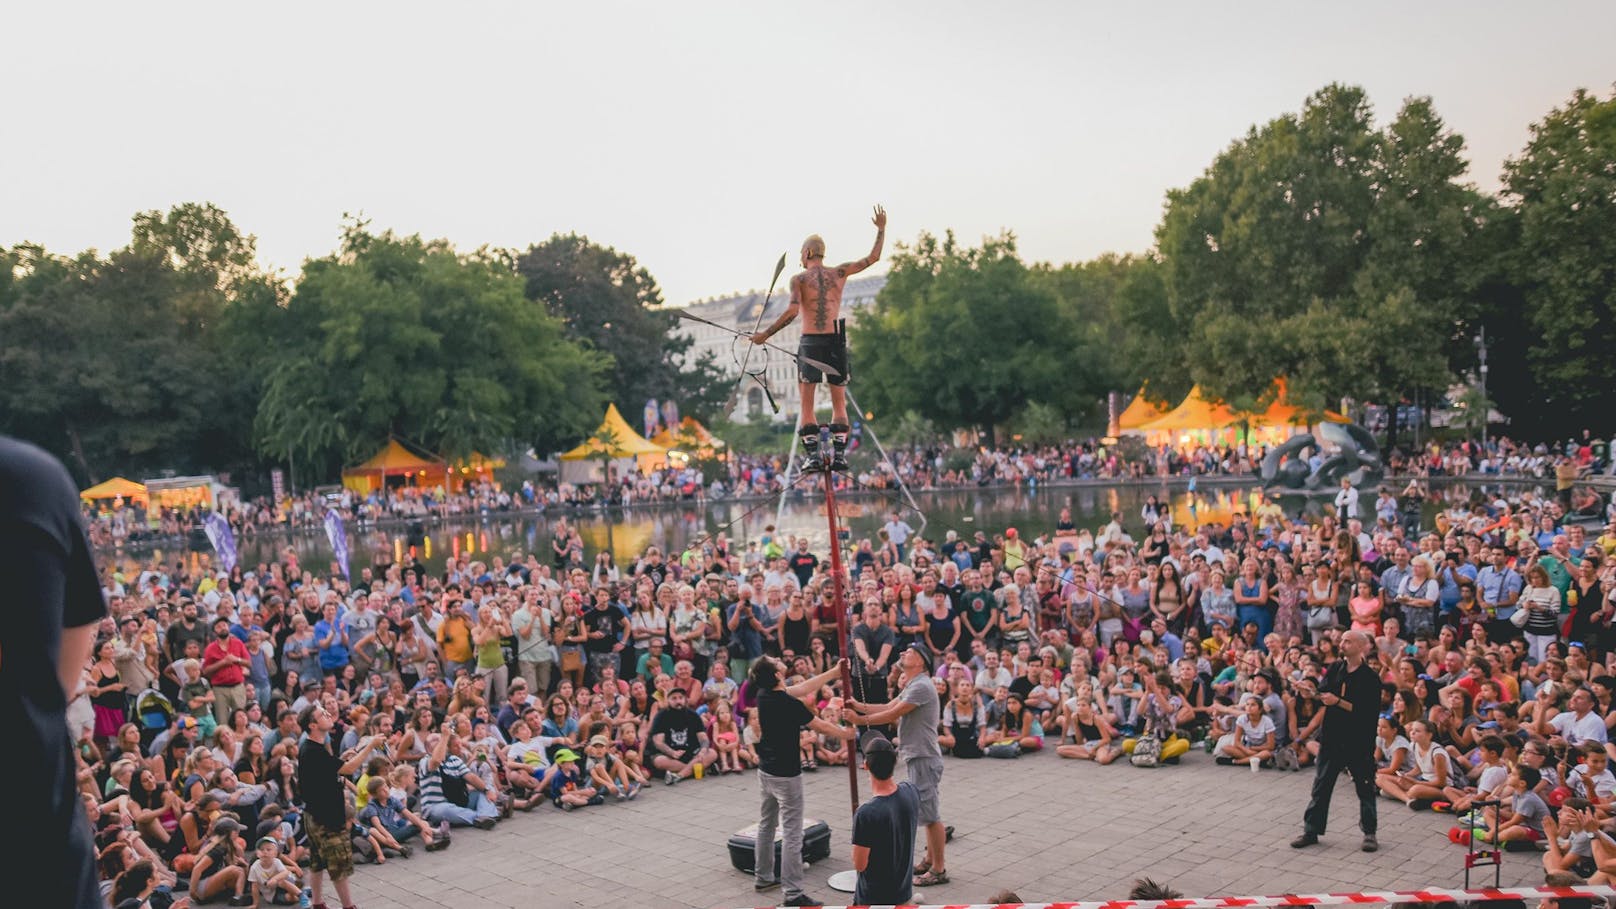 Nach zwei Jahren Corona-Pause versammeln sich internationale Straßenkünstler für das Gratis-Festival "Buskers" am Wiener Karlsplatz.